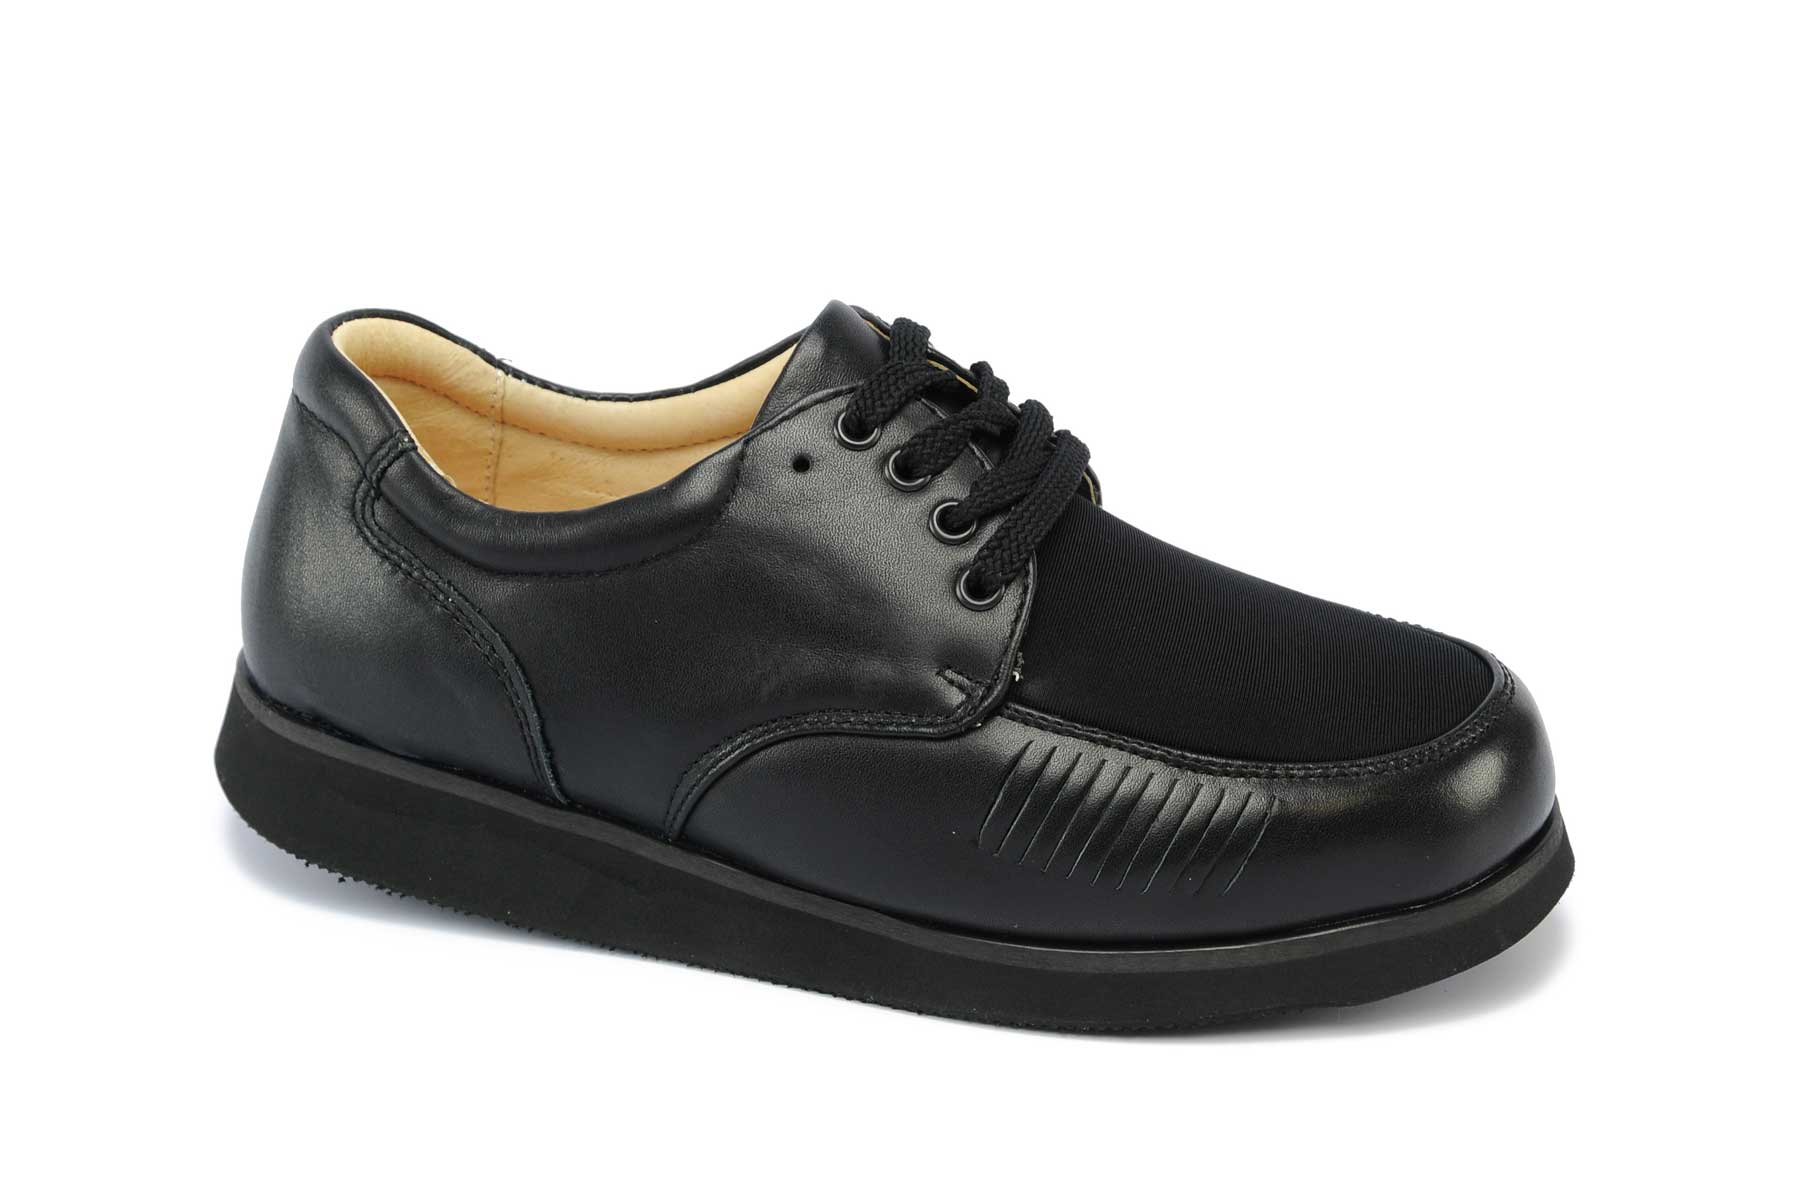 Apis Footwear Company - Mt. Emey 608 - Women's Lycra Casual Shoes